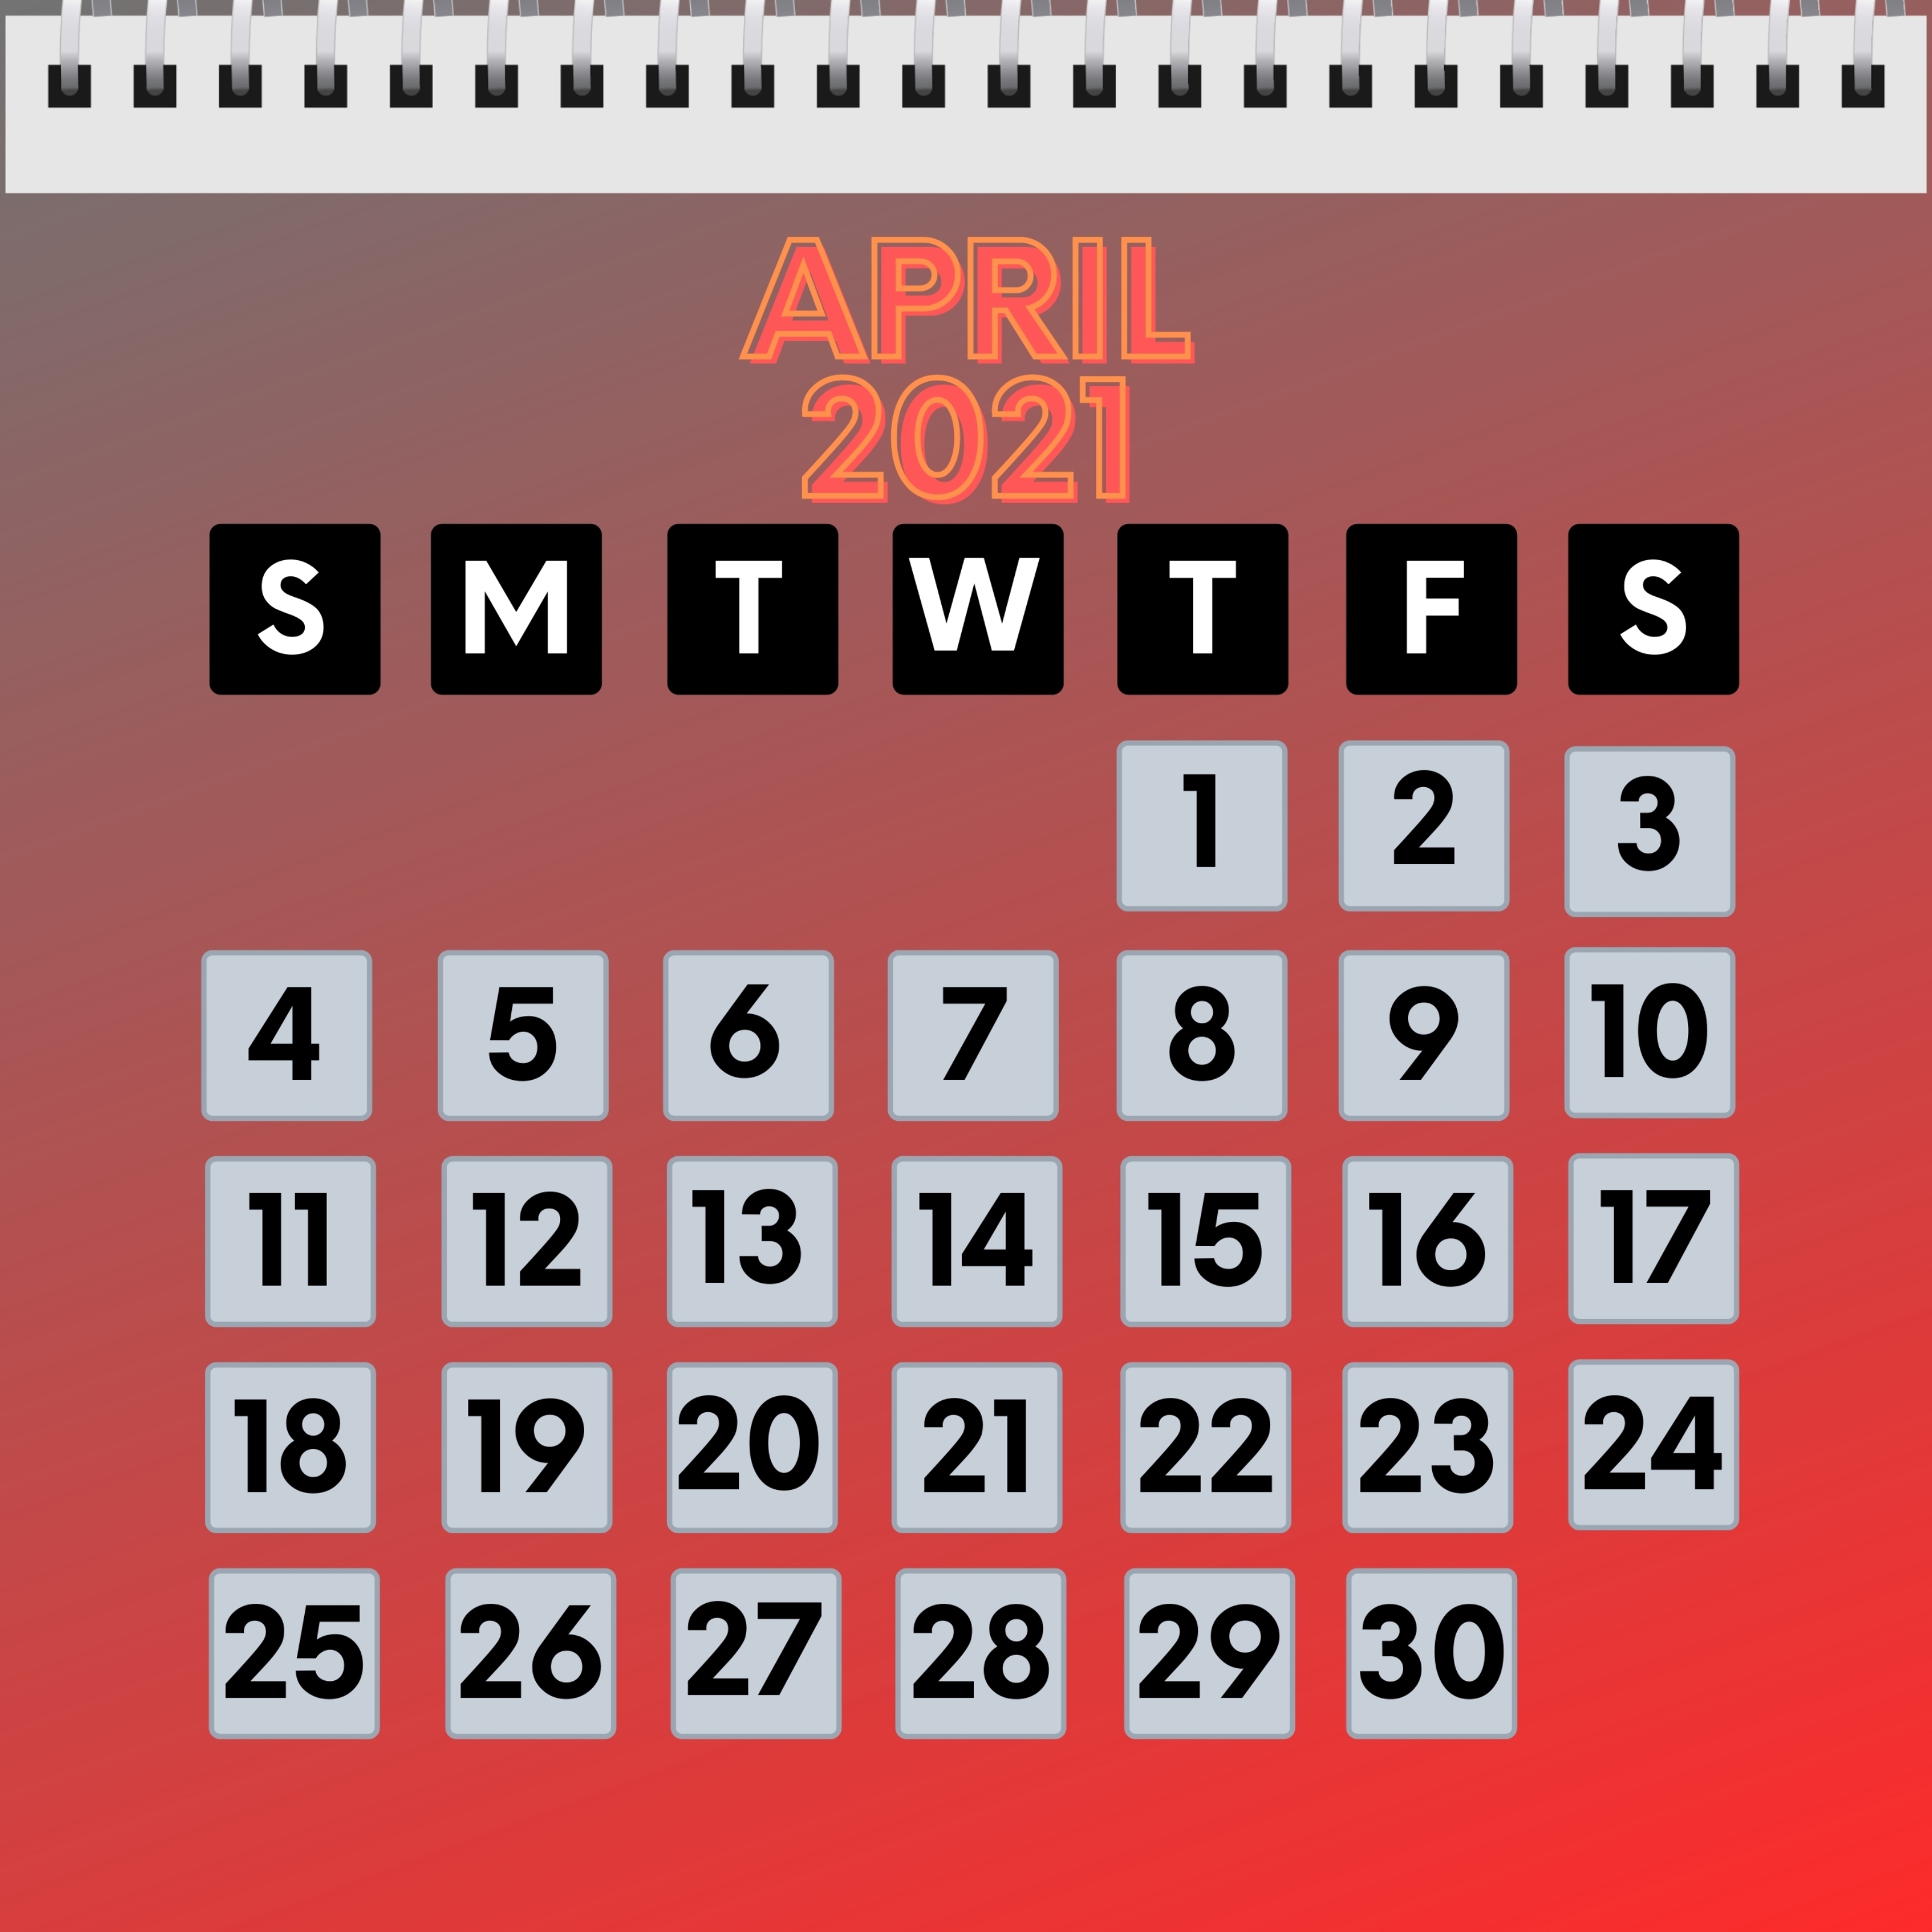 iPad Wallpapers April 2021 Calendar iPad Wallpaper 3208x3208 px